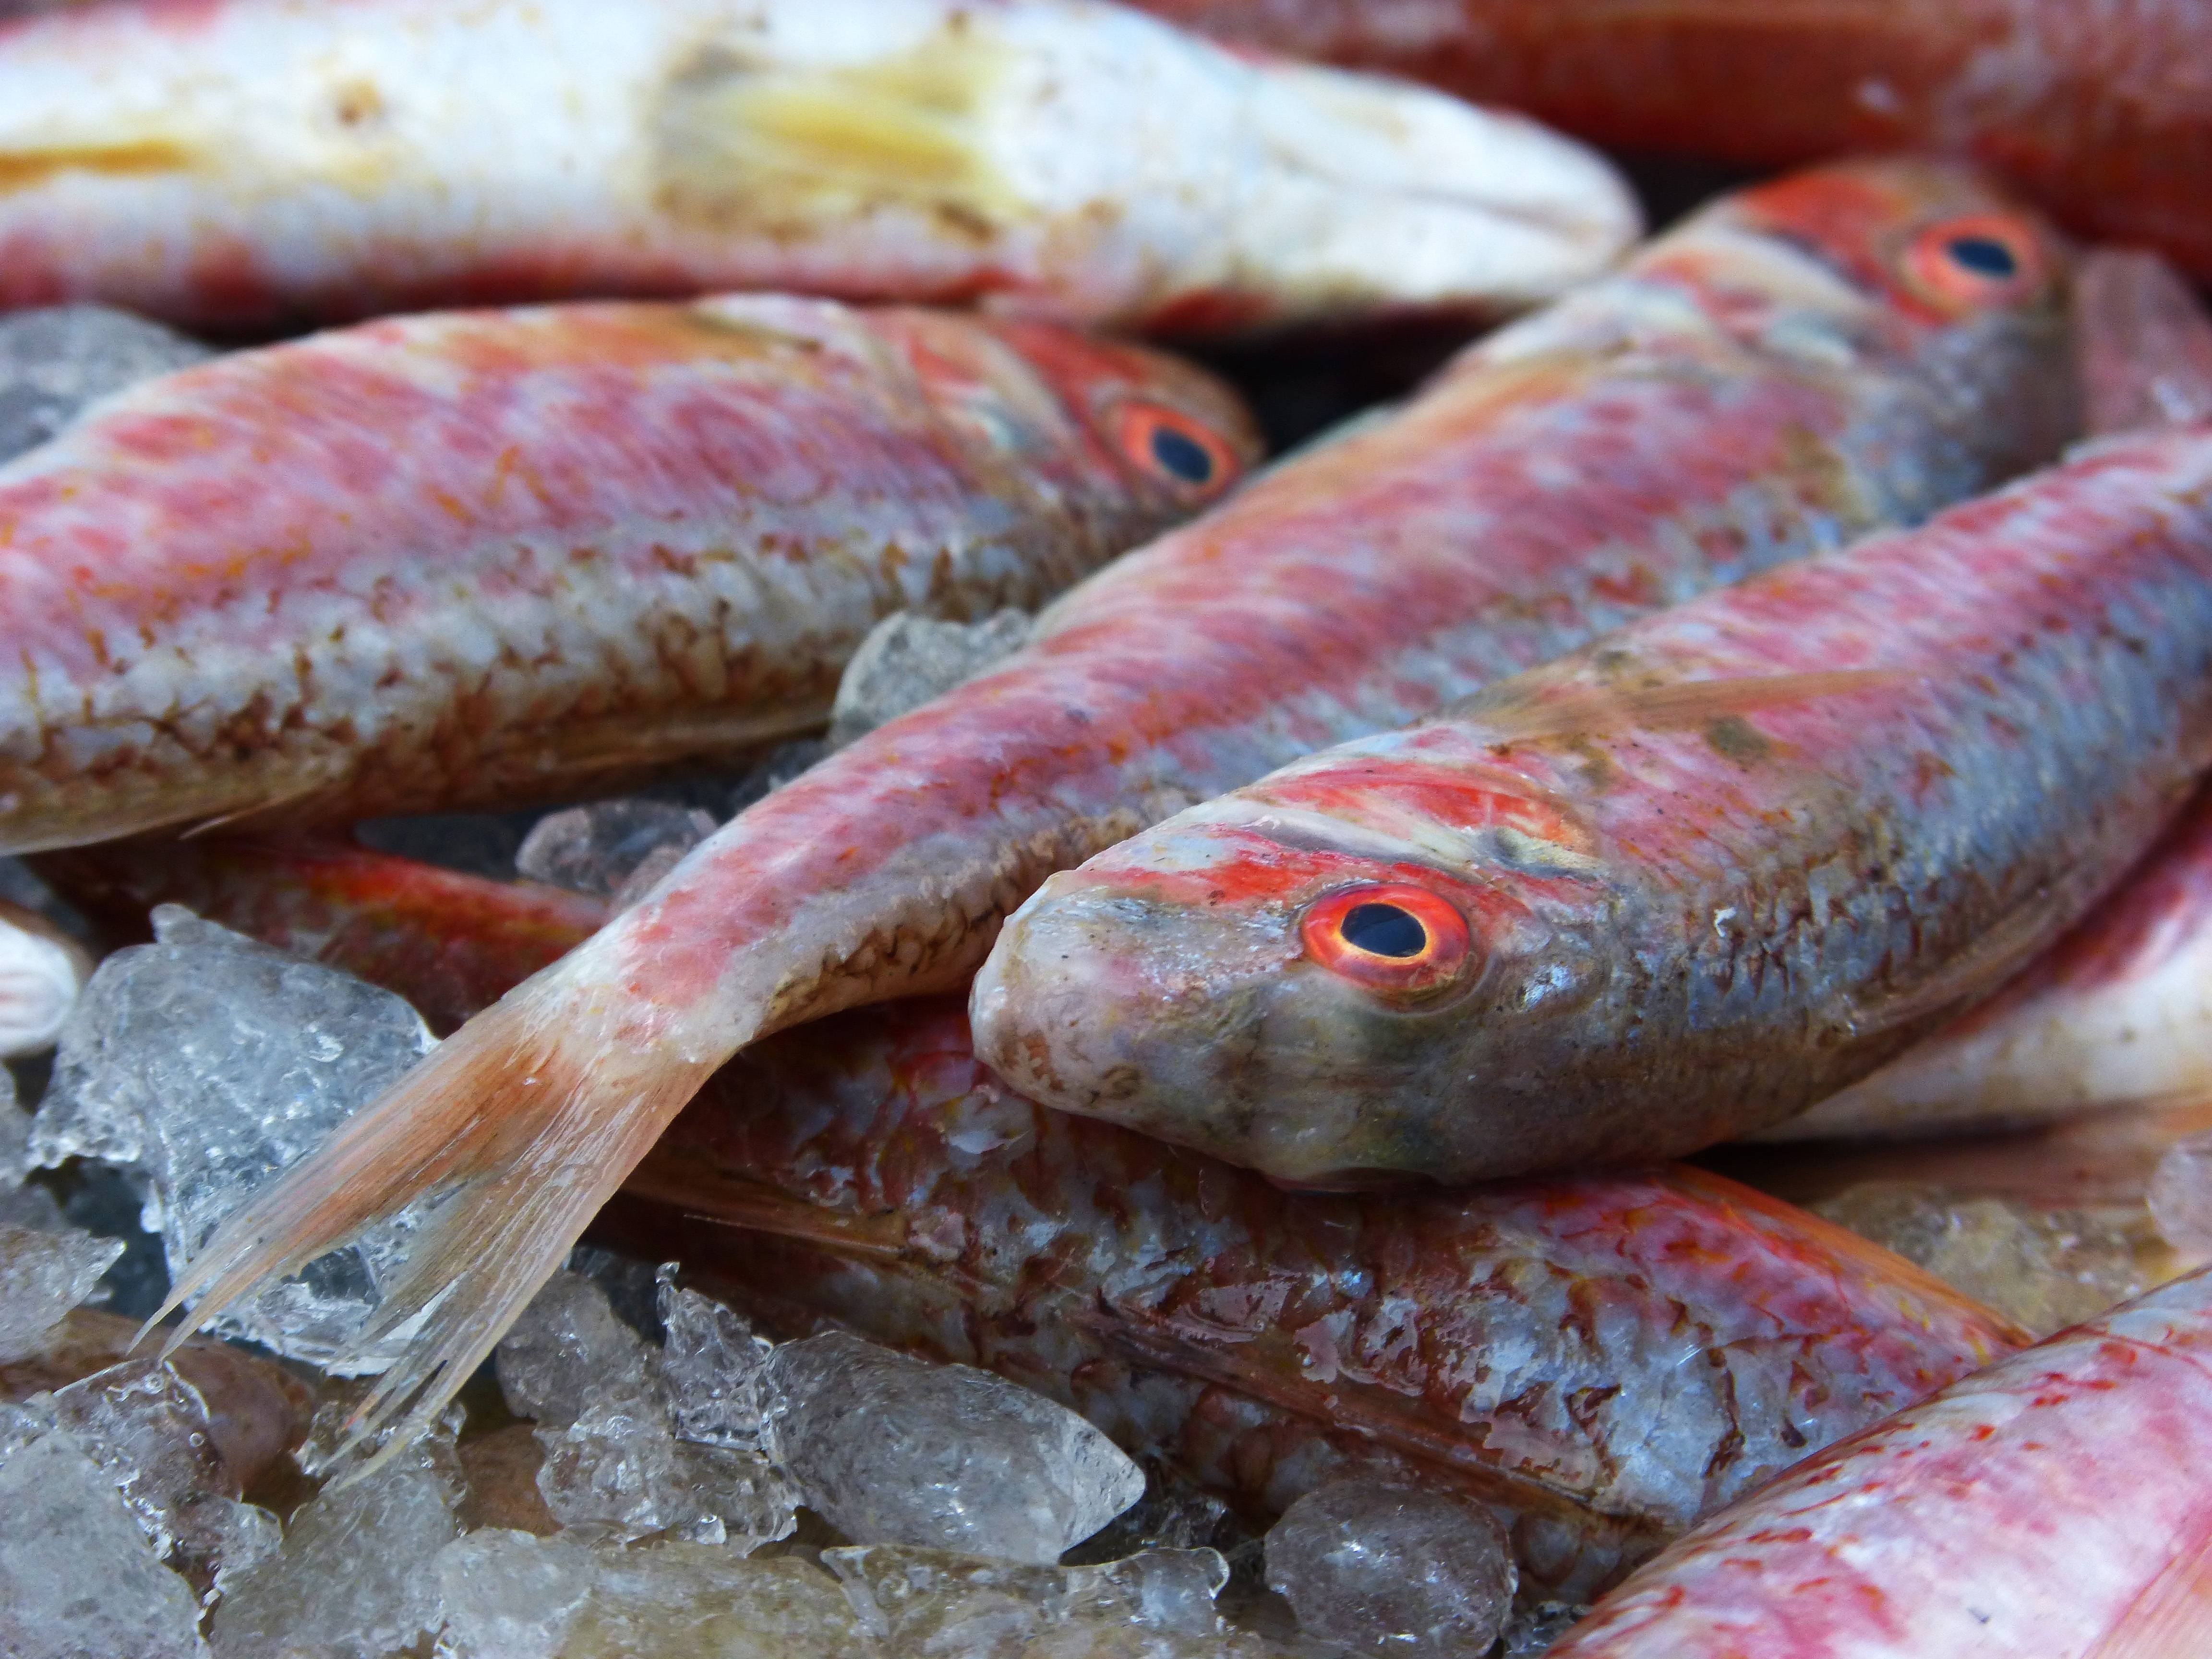 Черноморская барабулька (обыкновенная султанка): описание, фото, рыбалка